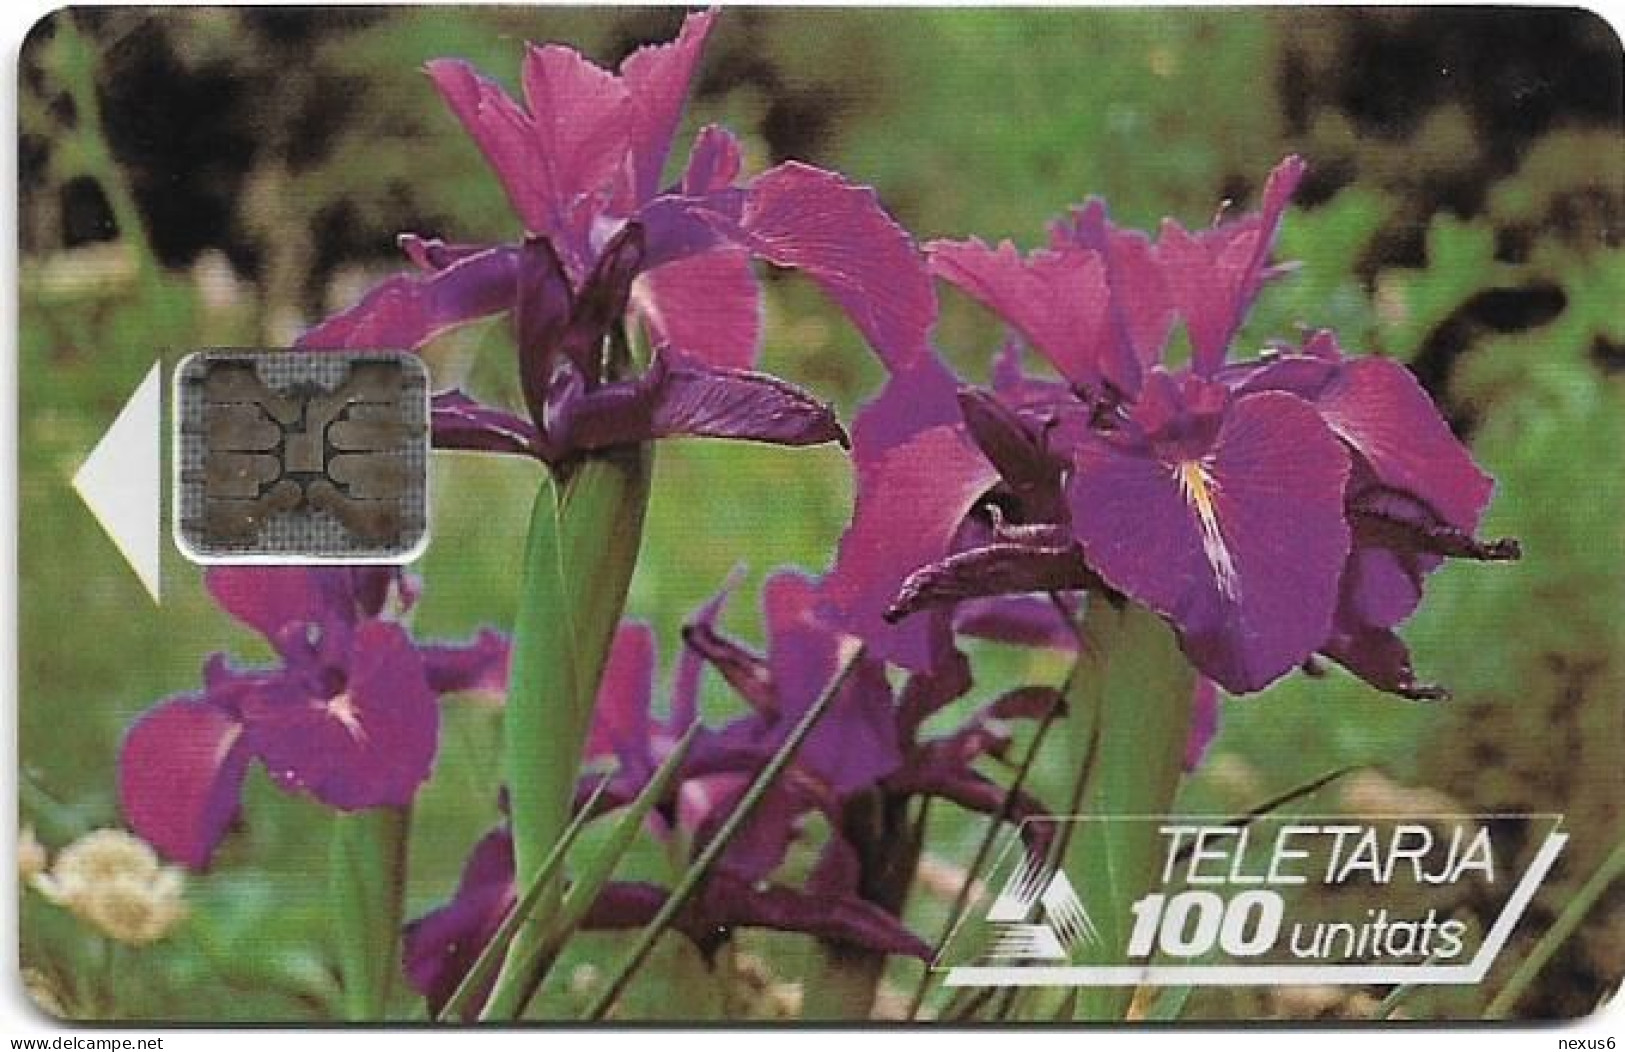 Andorra - STA - STA-0008 - Flowers, Pyrenean Iris, Cn.39531, 12.1992, SC5, 100U, 20.000ex, Used - Andorra